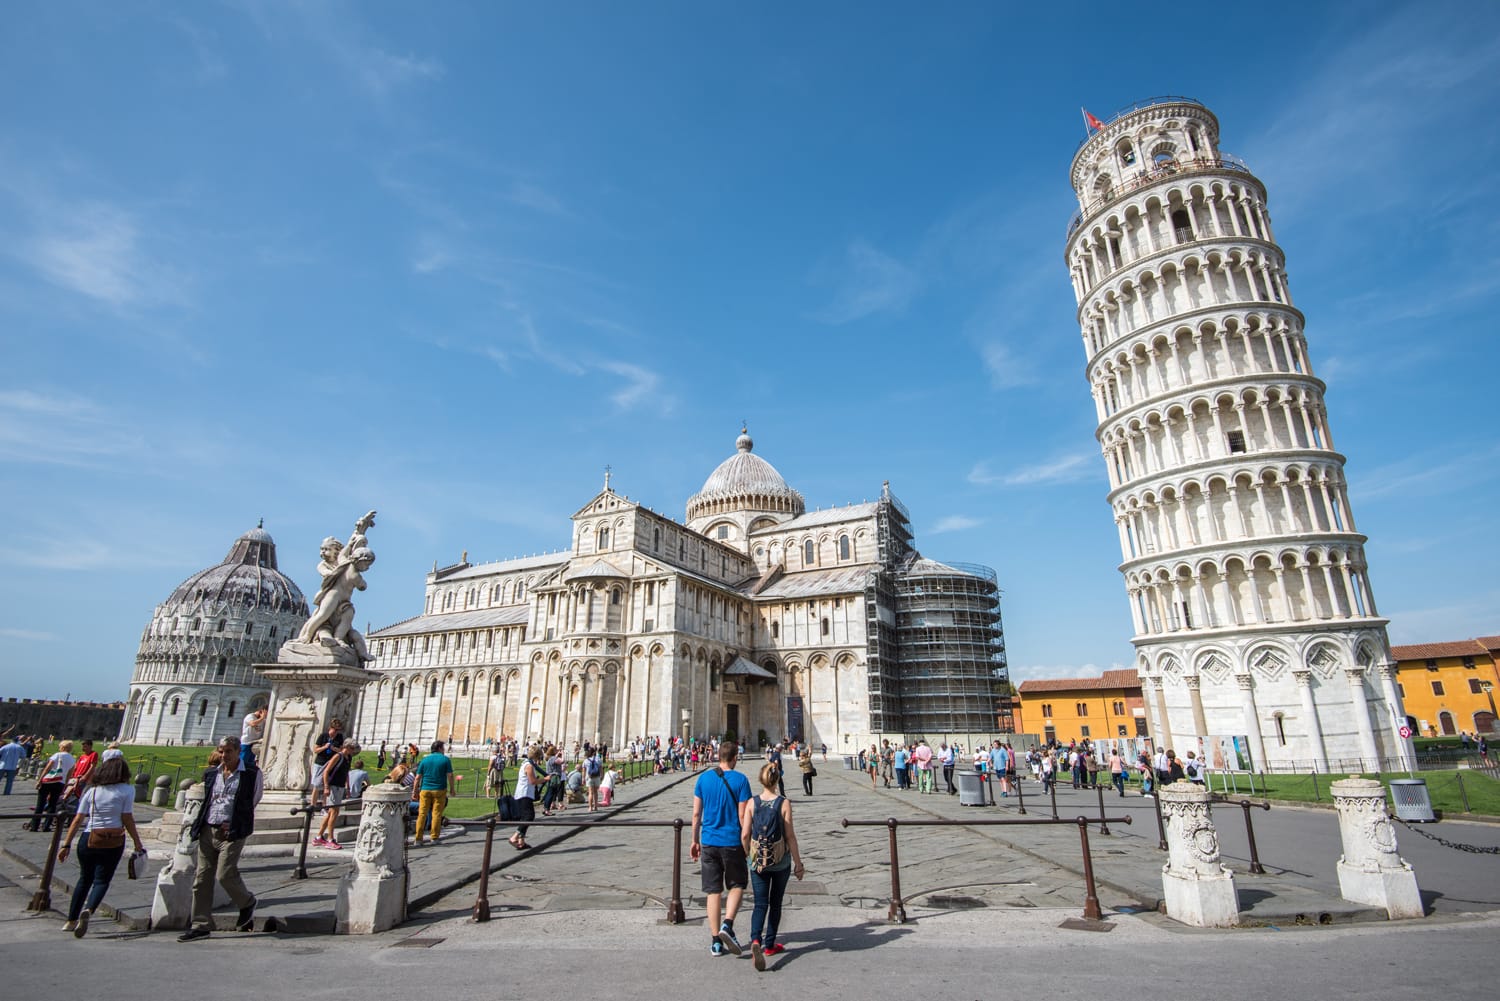 Συγκρότημα Piazza dei Miracoli με τον κεκλιμένο πύργο της Πίζας μπροστά, Ιταλία